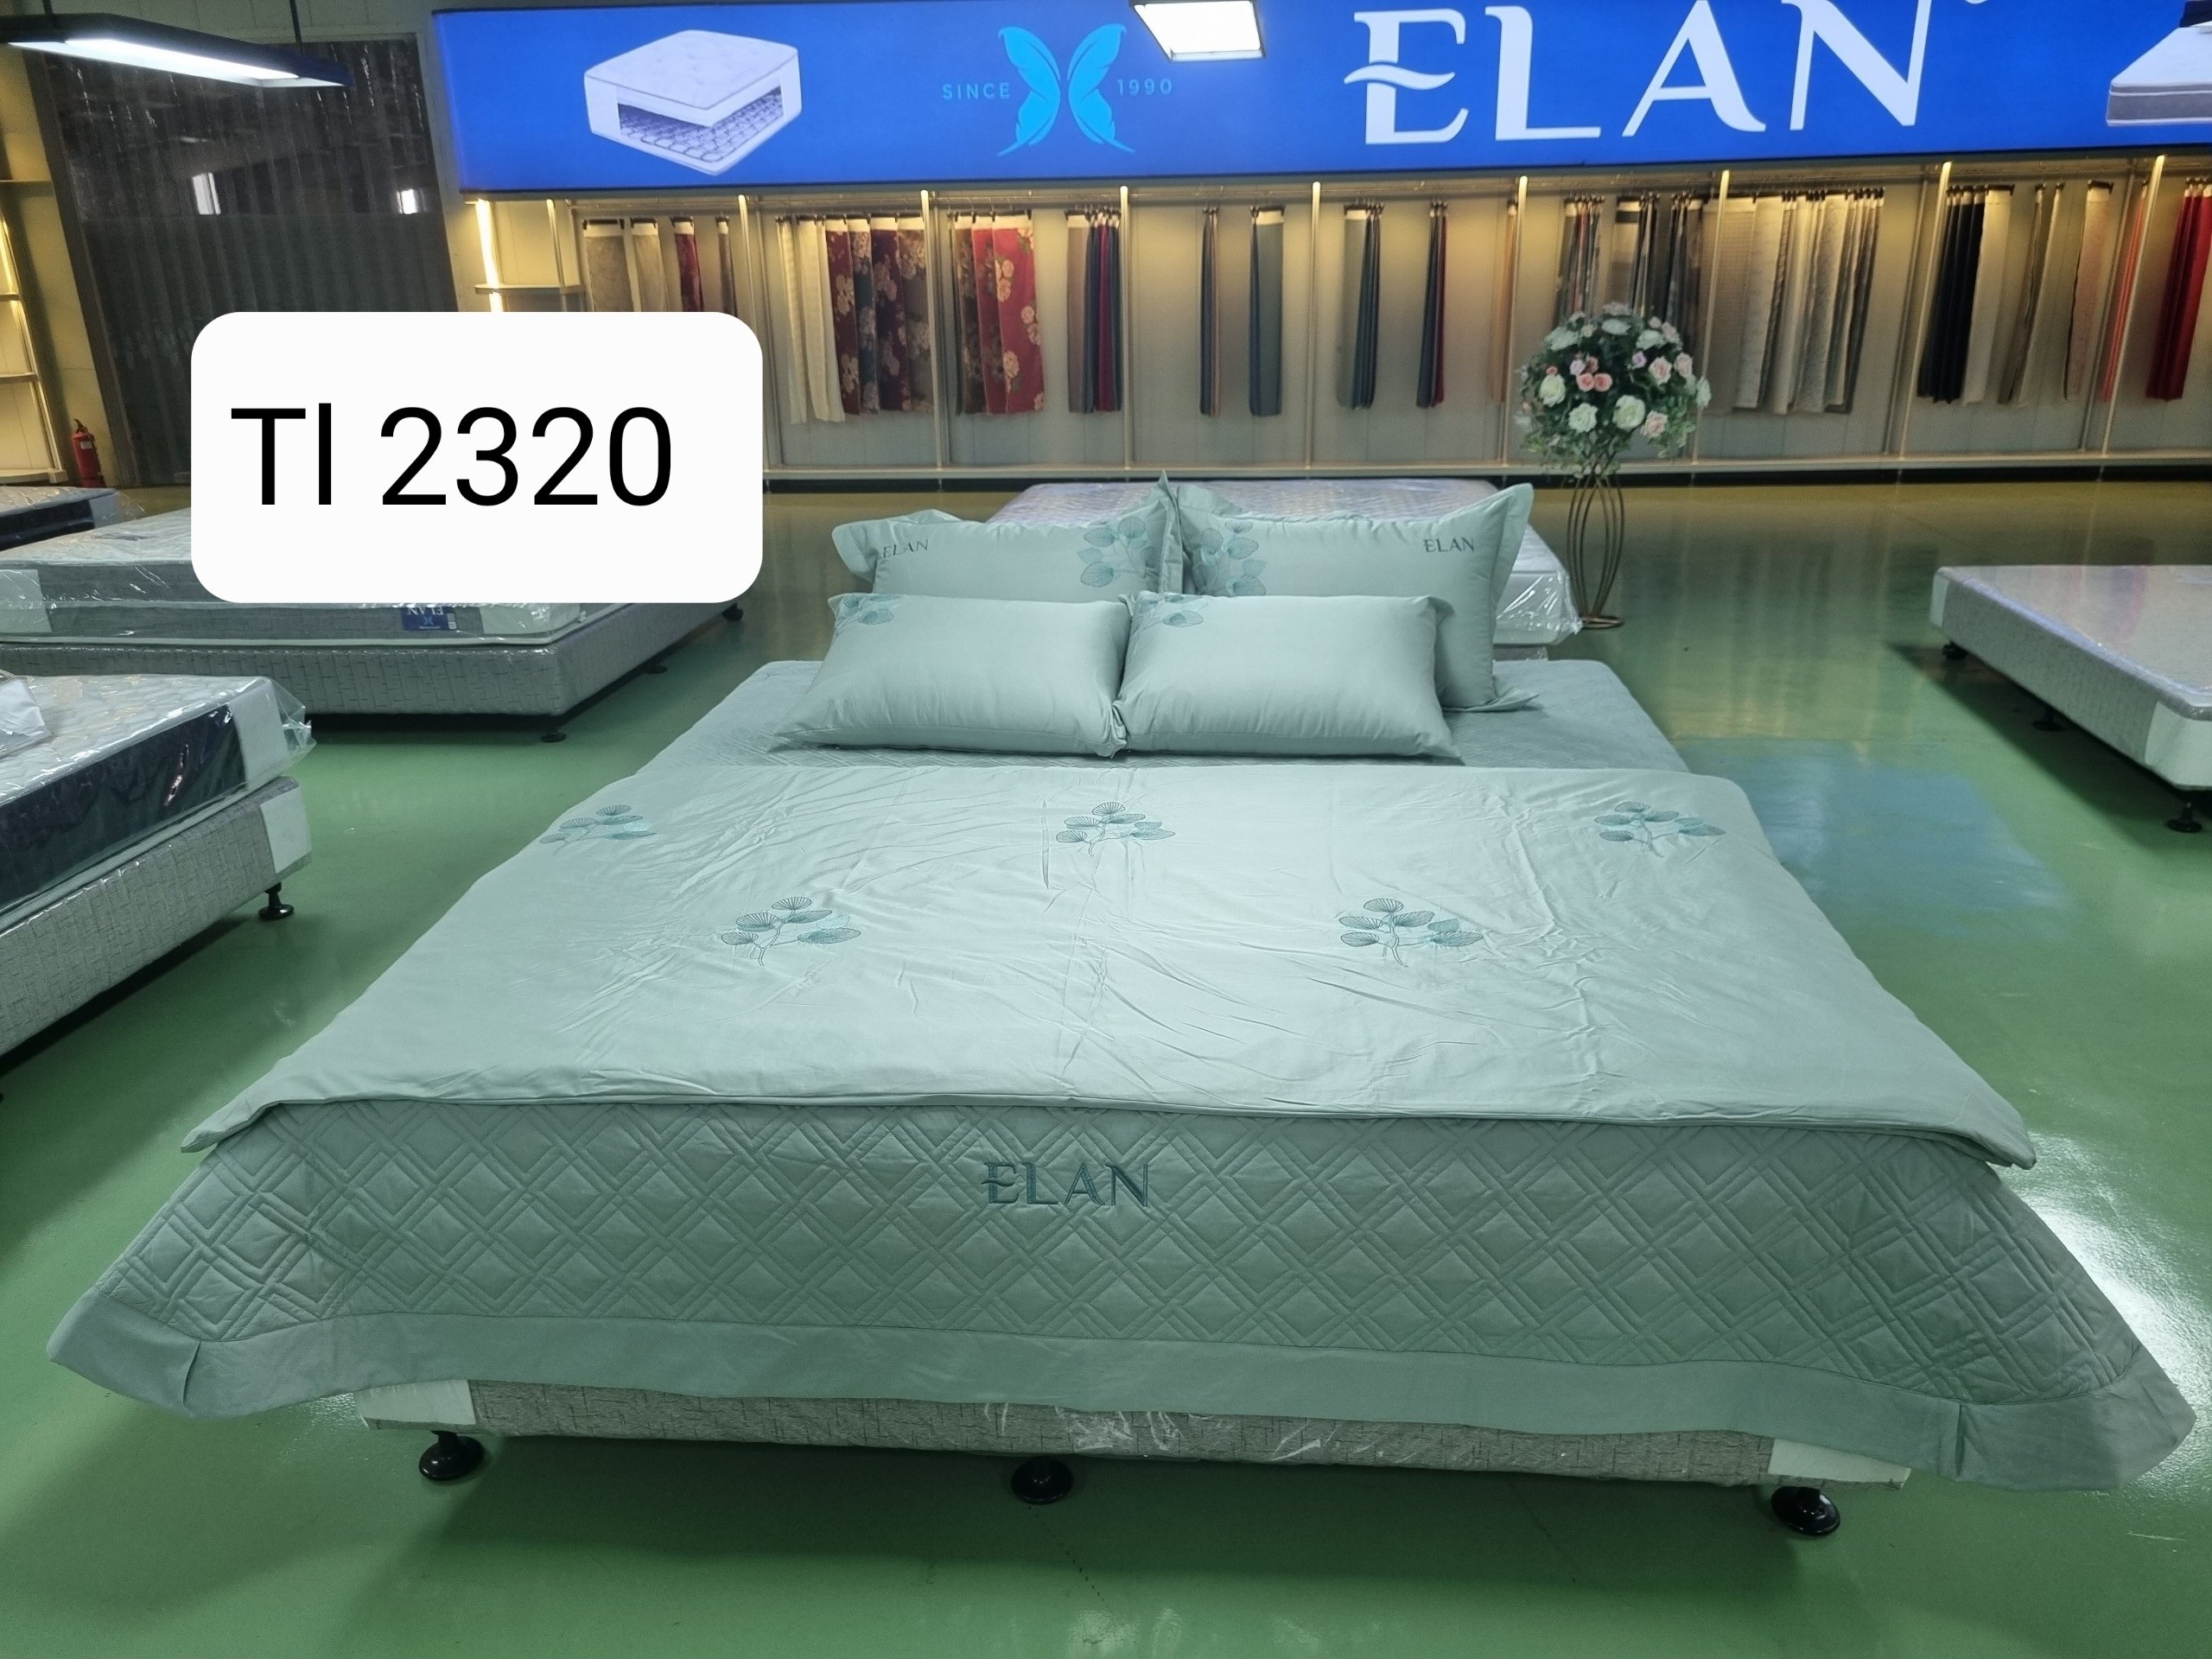 Bộ chăn ga phủ gối 7 món ELan Hàn Quốc cao cấp vải cotton satin DB ST2258 gồm: Ga phủ, chăn chần bông 4 mùa, 4 vỏ gối nằm, 1 vỏ gối ôm